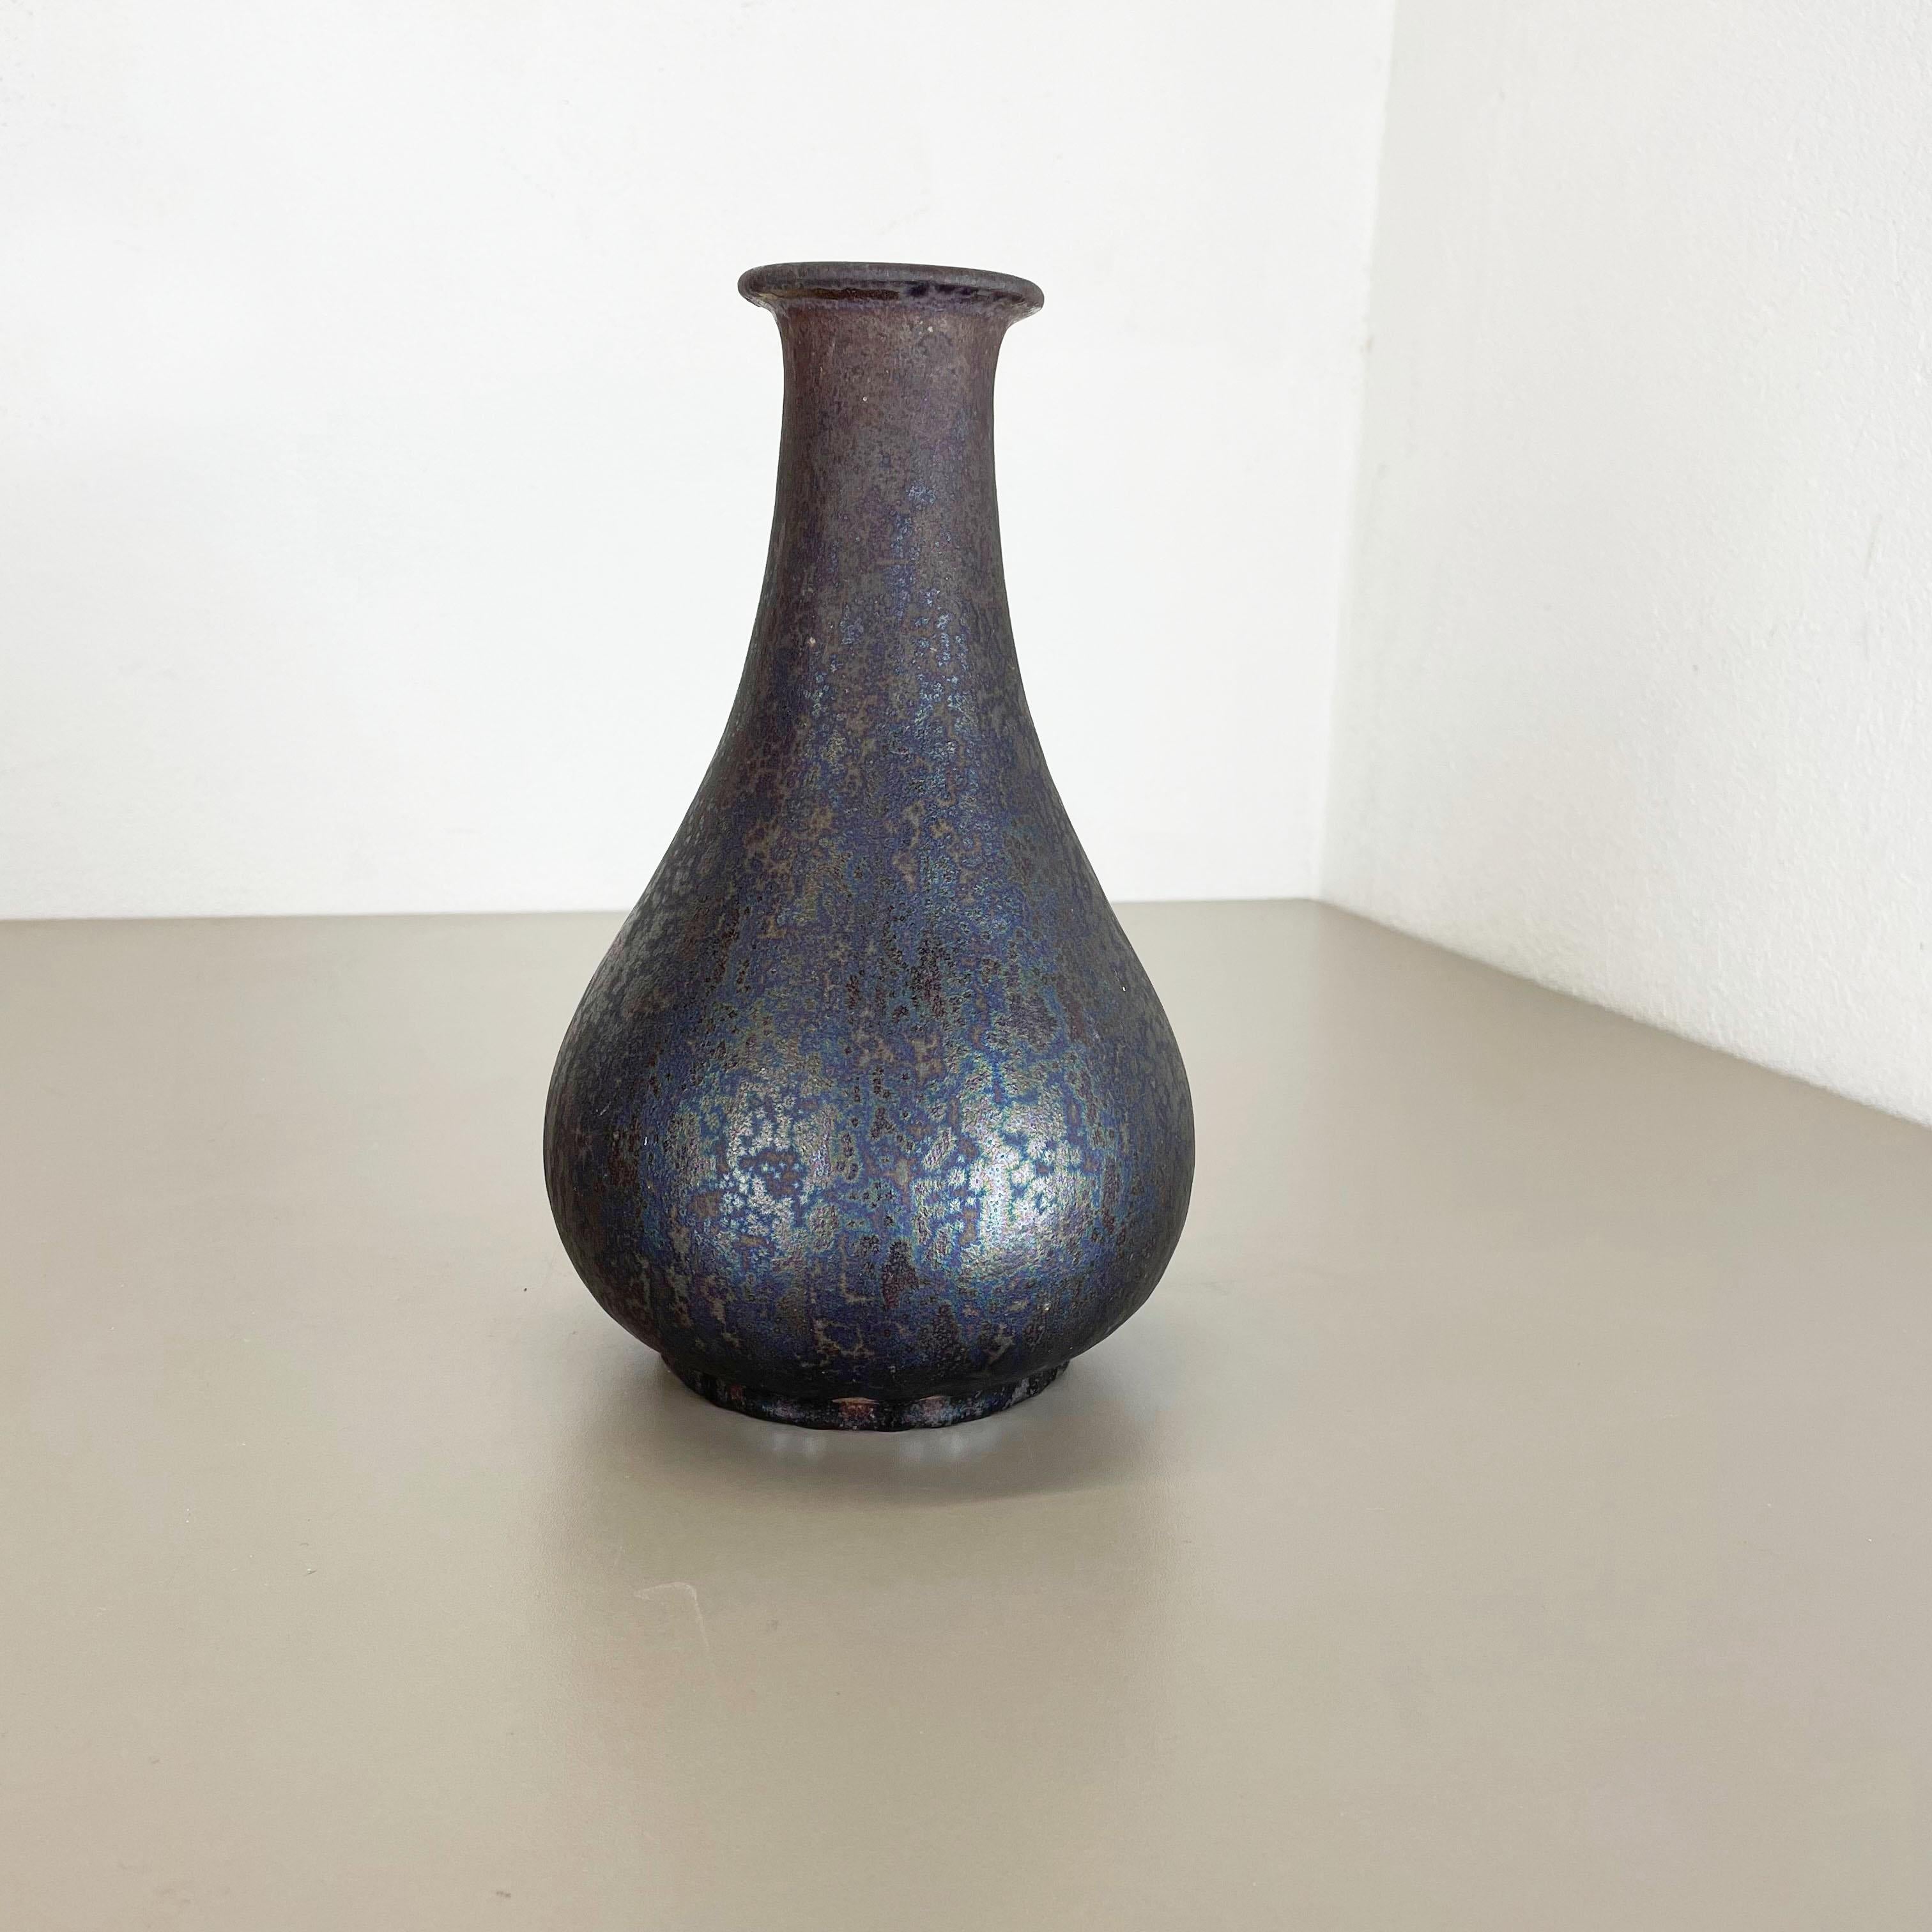 Artikel:

Fette Lava-Kunstvase


Modell: 830


Produzent:

Ruscha, Deutschland



Jahrzehnt:

1970s




Diese originelle Vintage-Vase wurde in den 1970er Jahren in Deutschland hergestellt. Sie ist aus Keramik in fetter